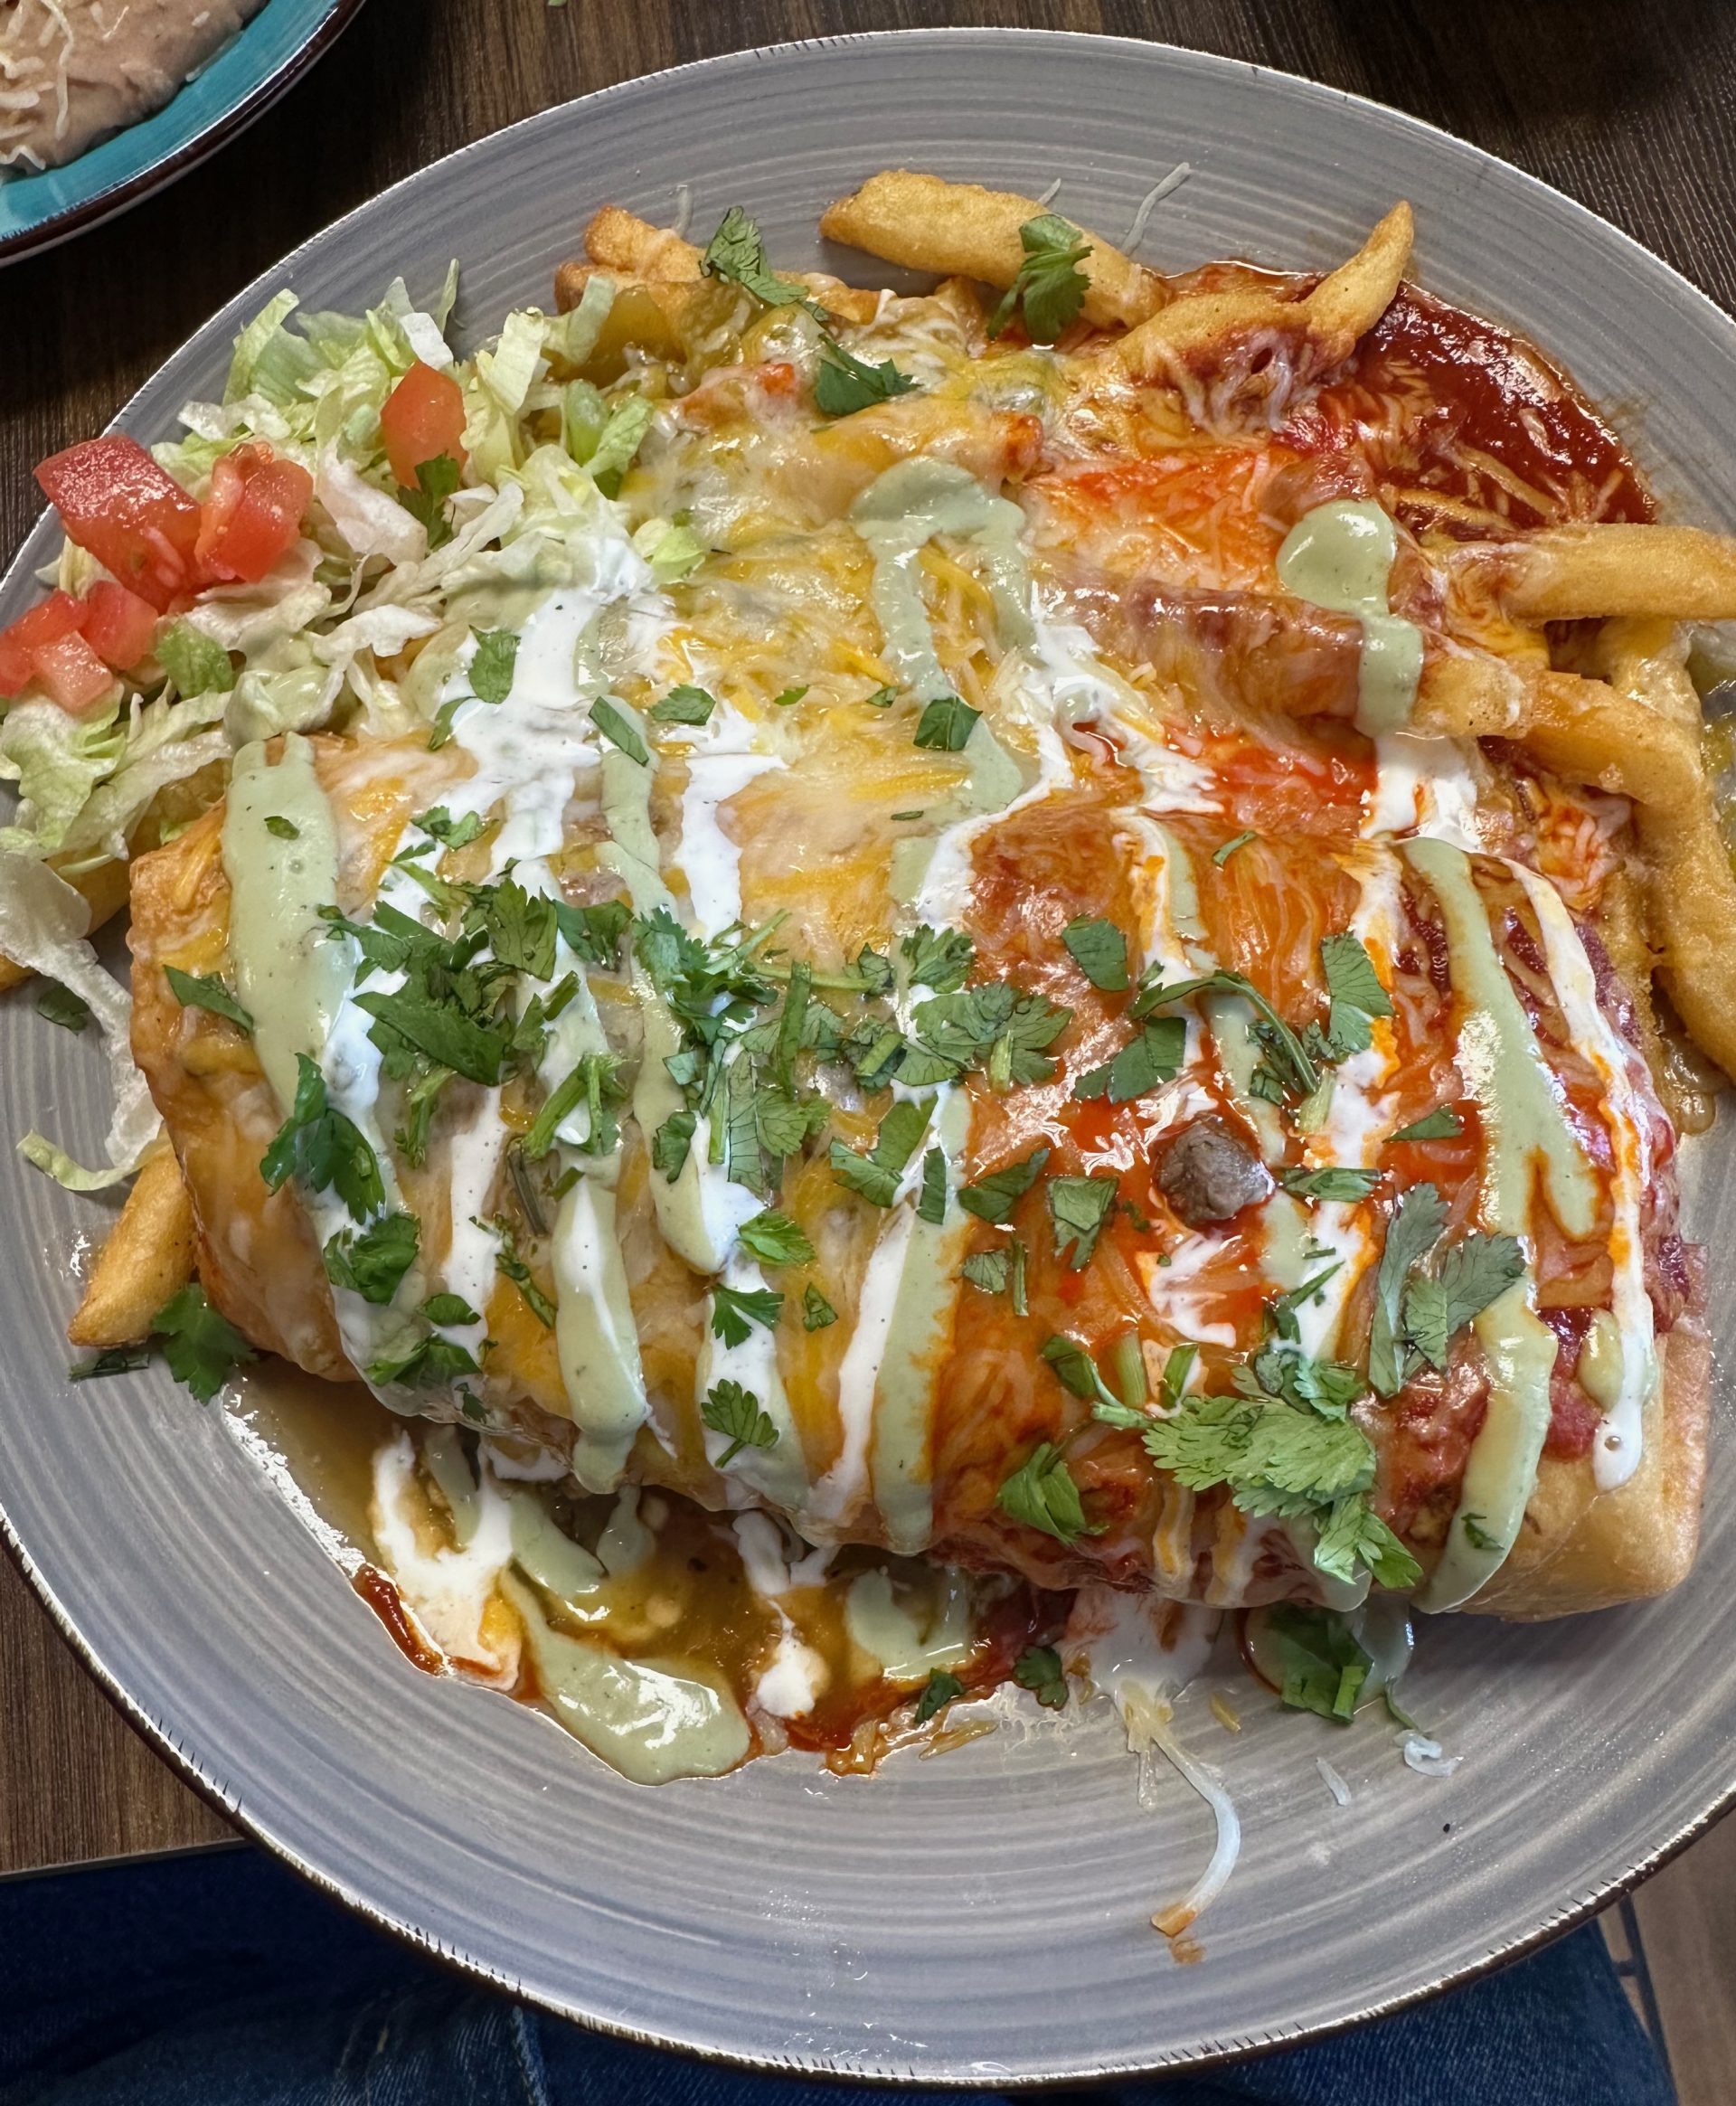 Ramona’s Mexican Cafe – Albuquerque, New Mexico